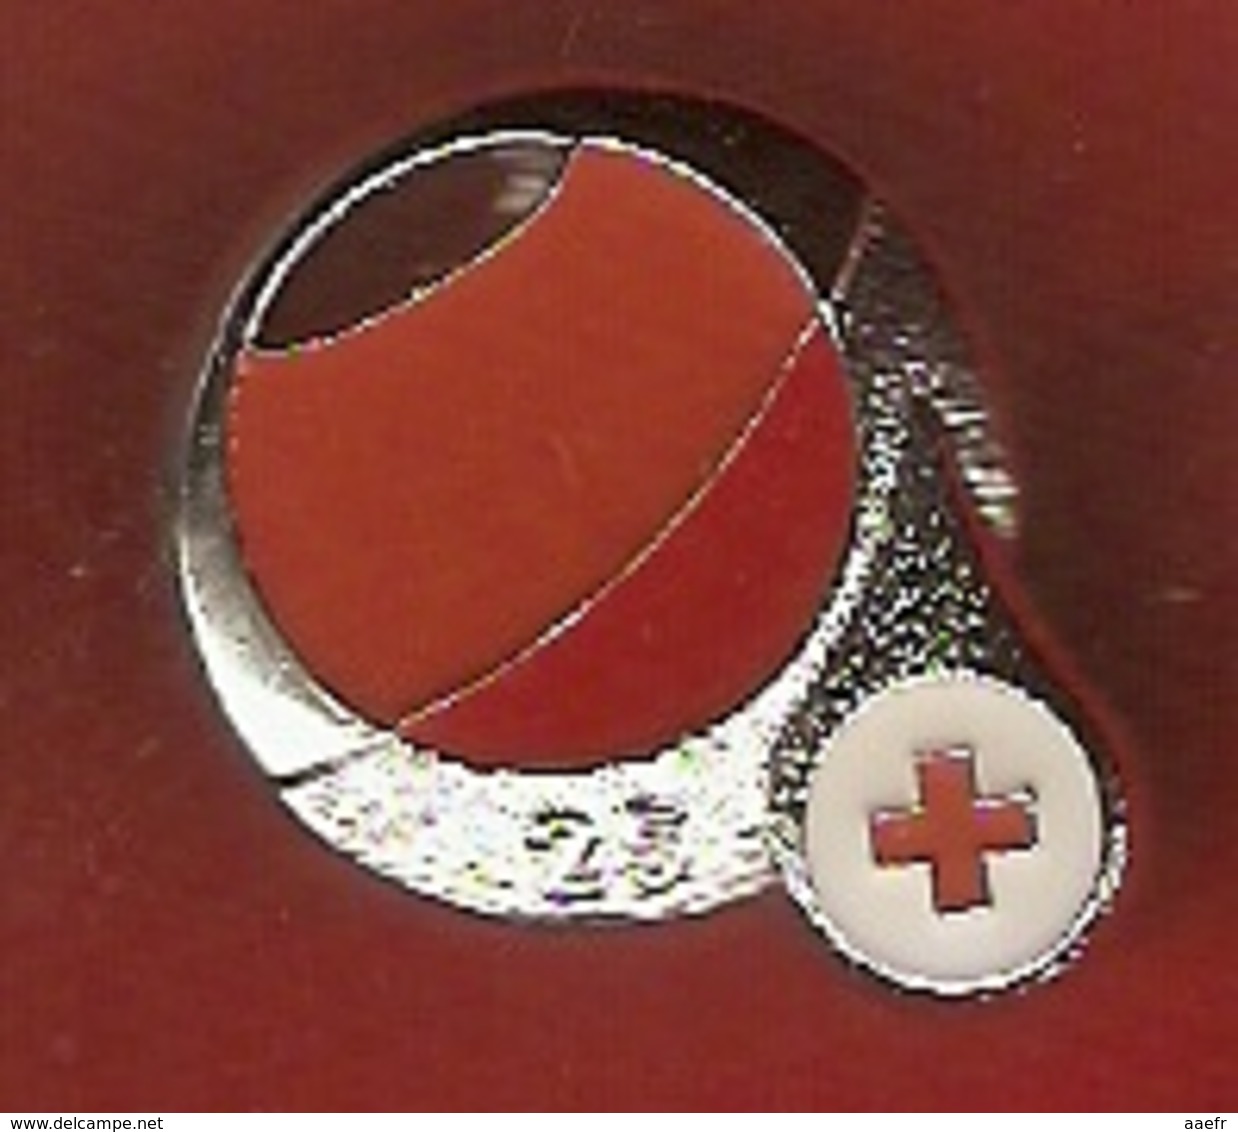 Croix Rouge De Belgique 2019 - Donneur De Sang Depuis 25 Ans - Pin's Neuf - Médical